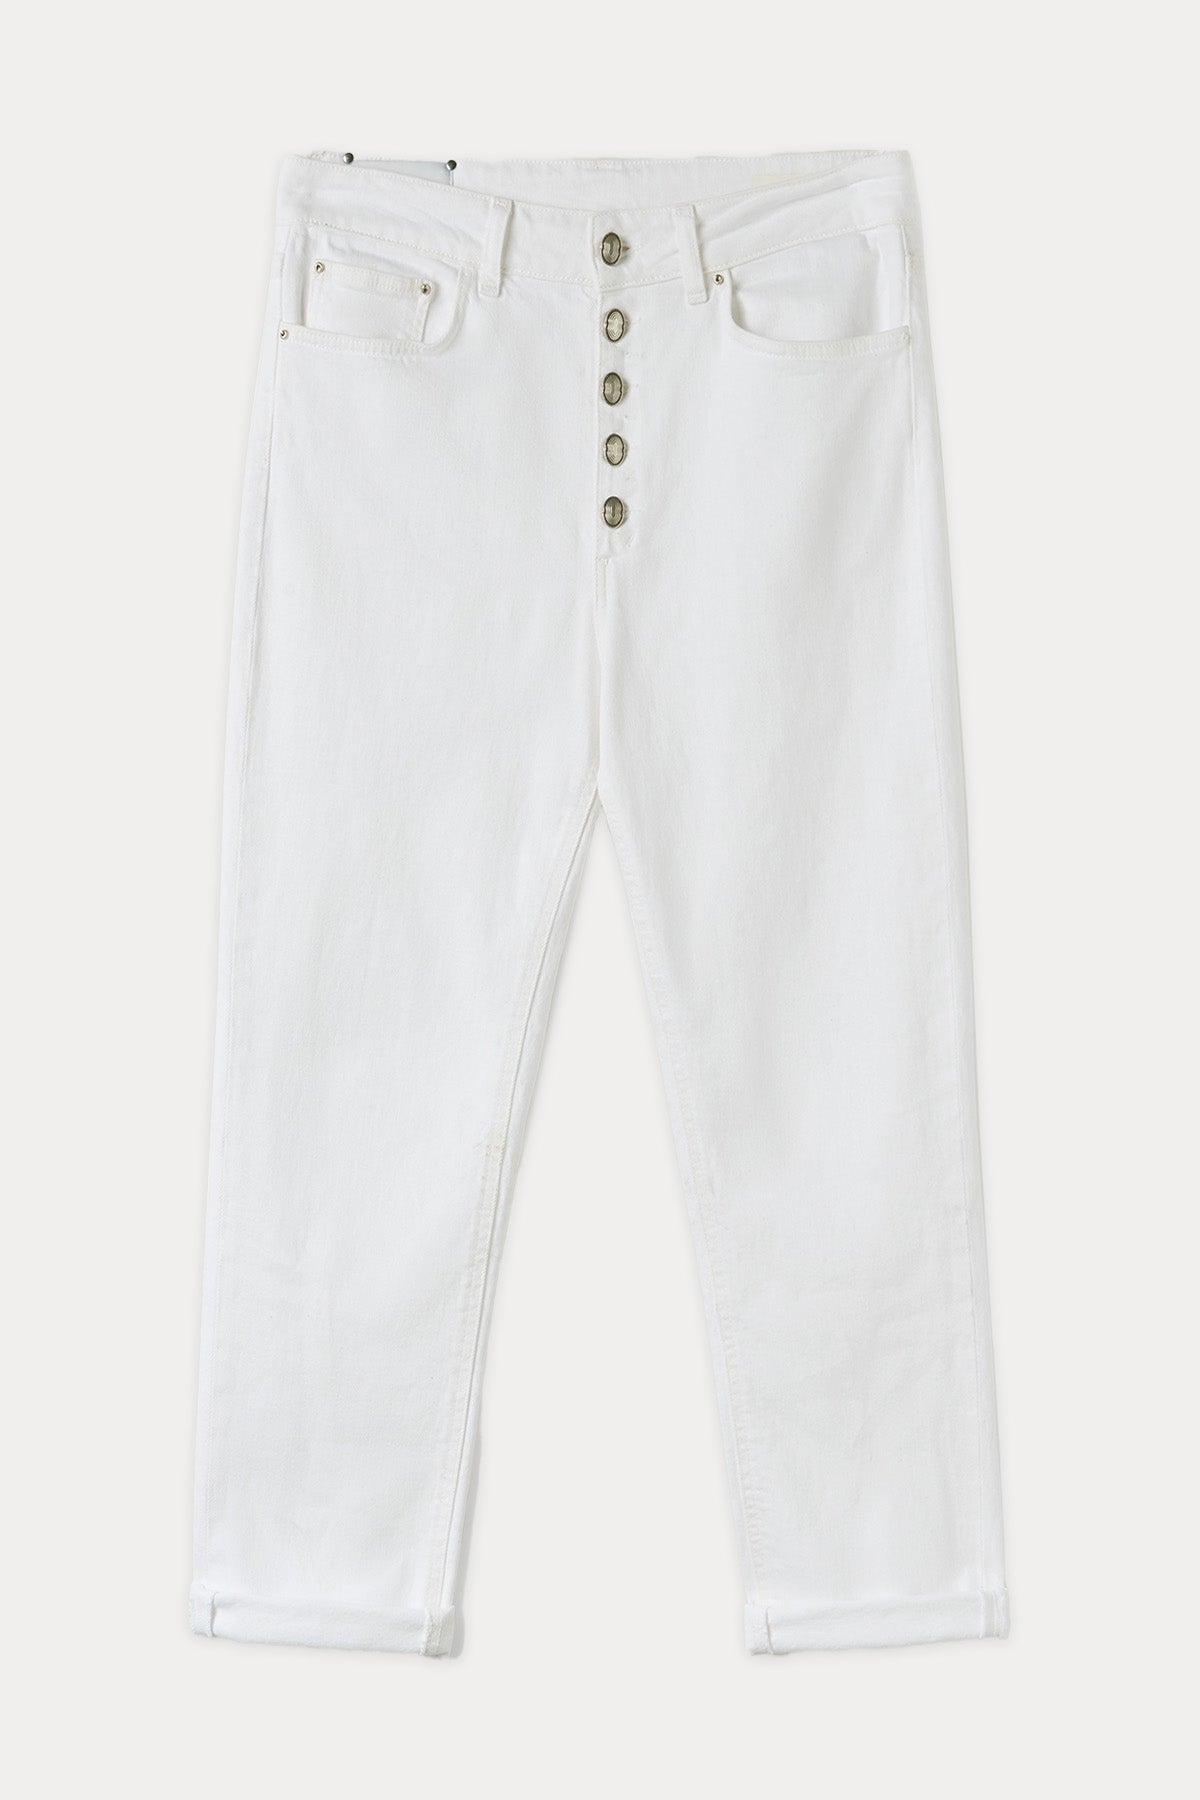 Dondup Koons Loose Fit Yüksek Bel Jeans-Libas Trendy Fashion Store